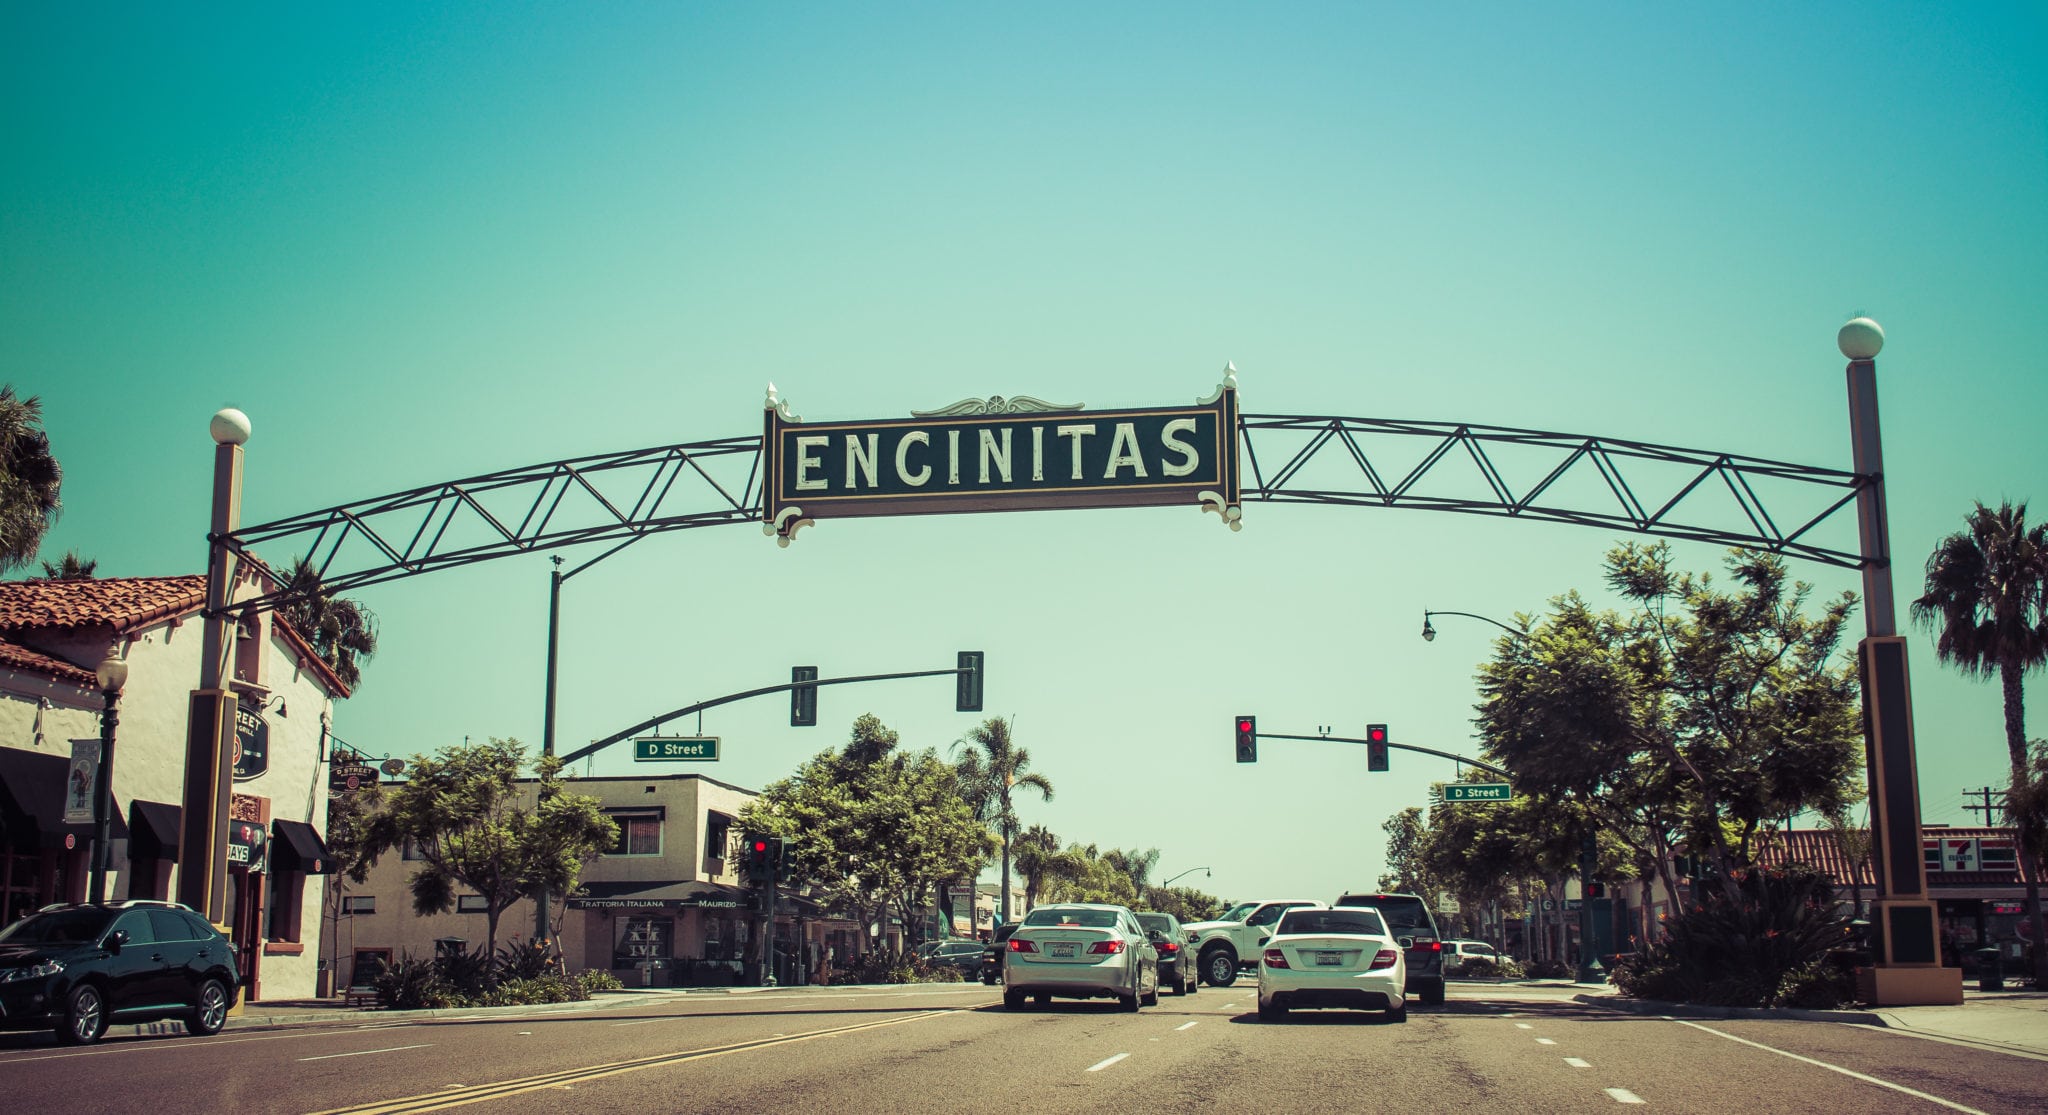 Surfing in California: Encinitas, San Diego